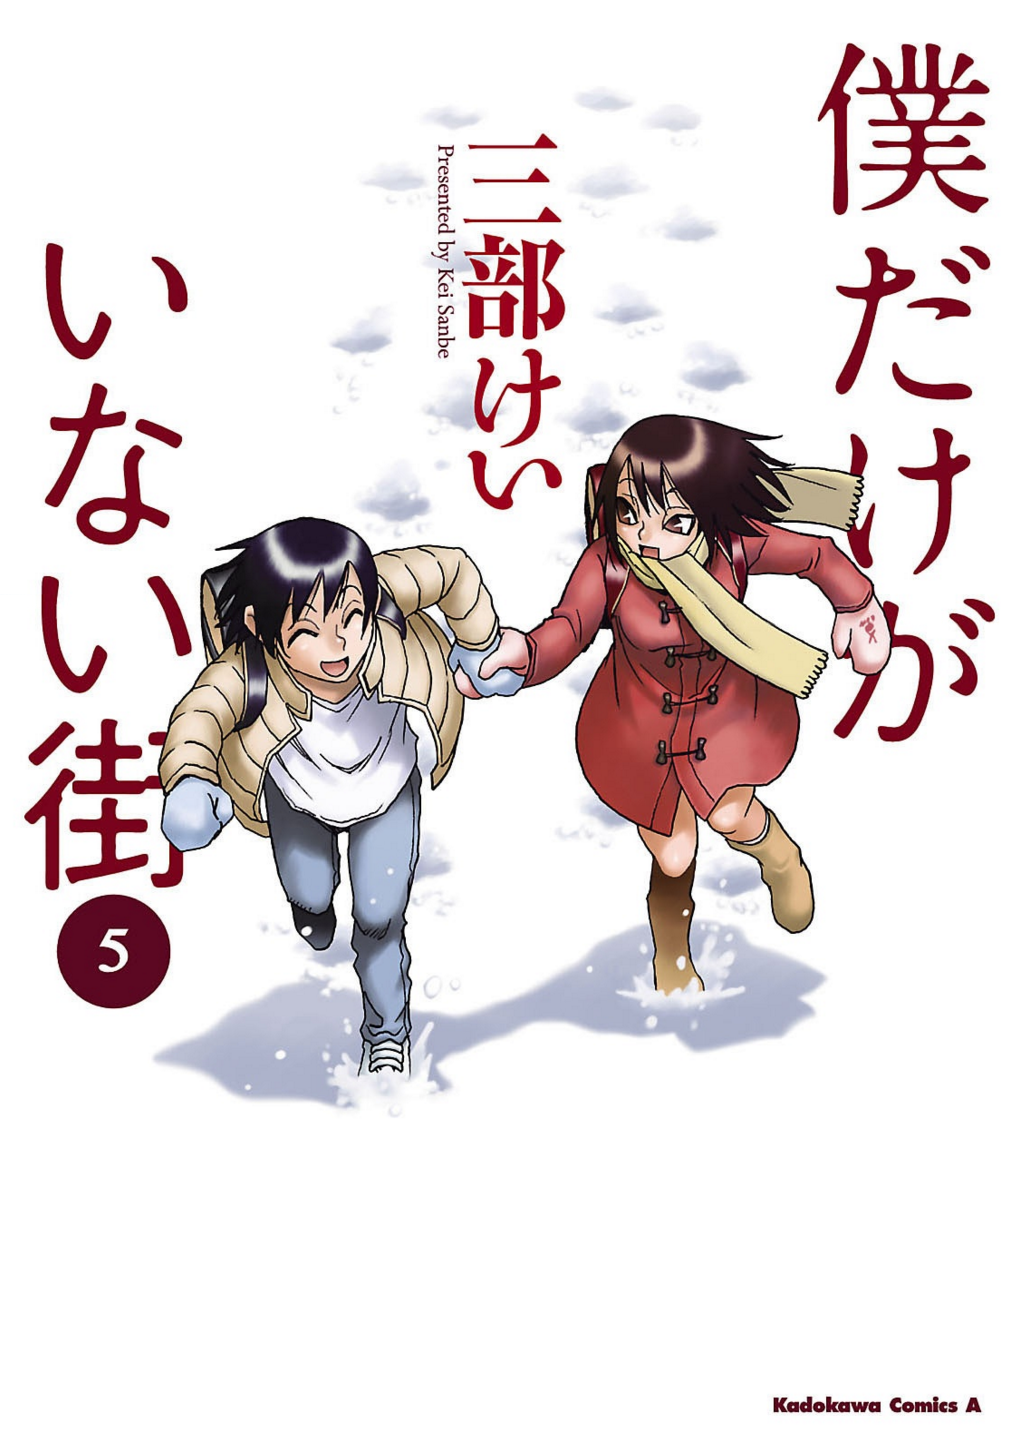 Manga | Boku Dake ga Inai Machi Wikia | Fandom